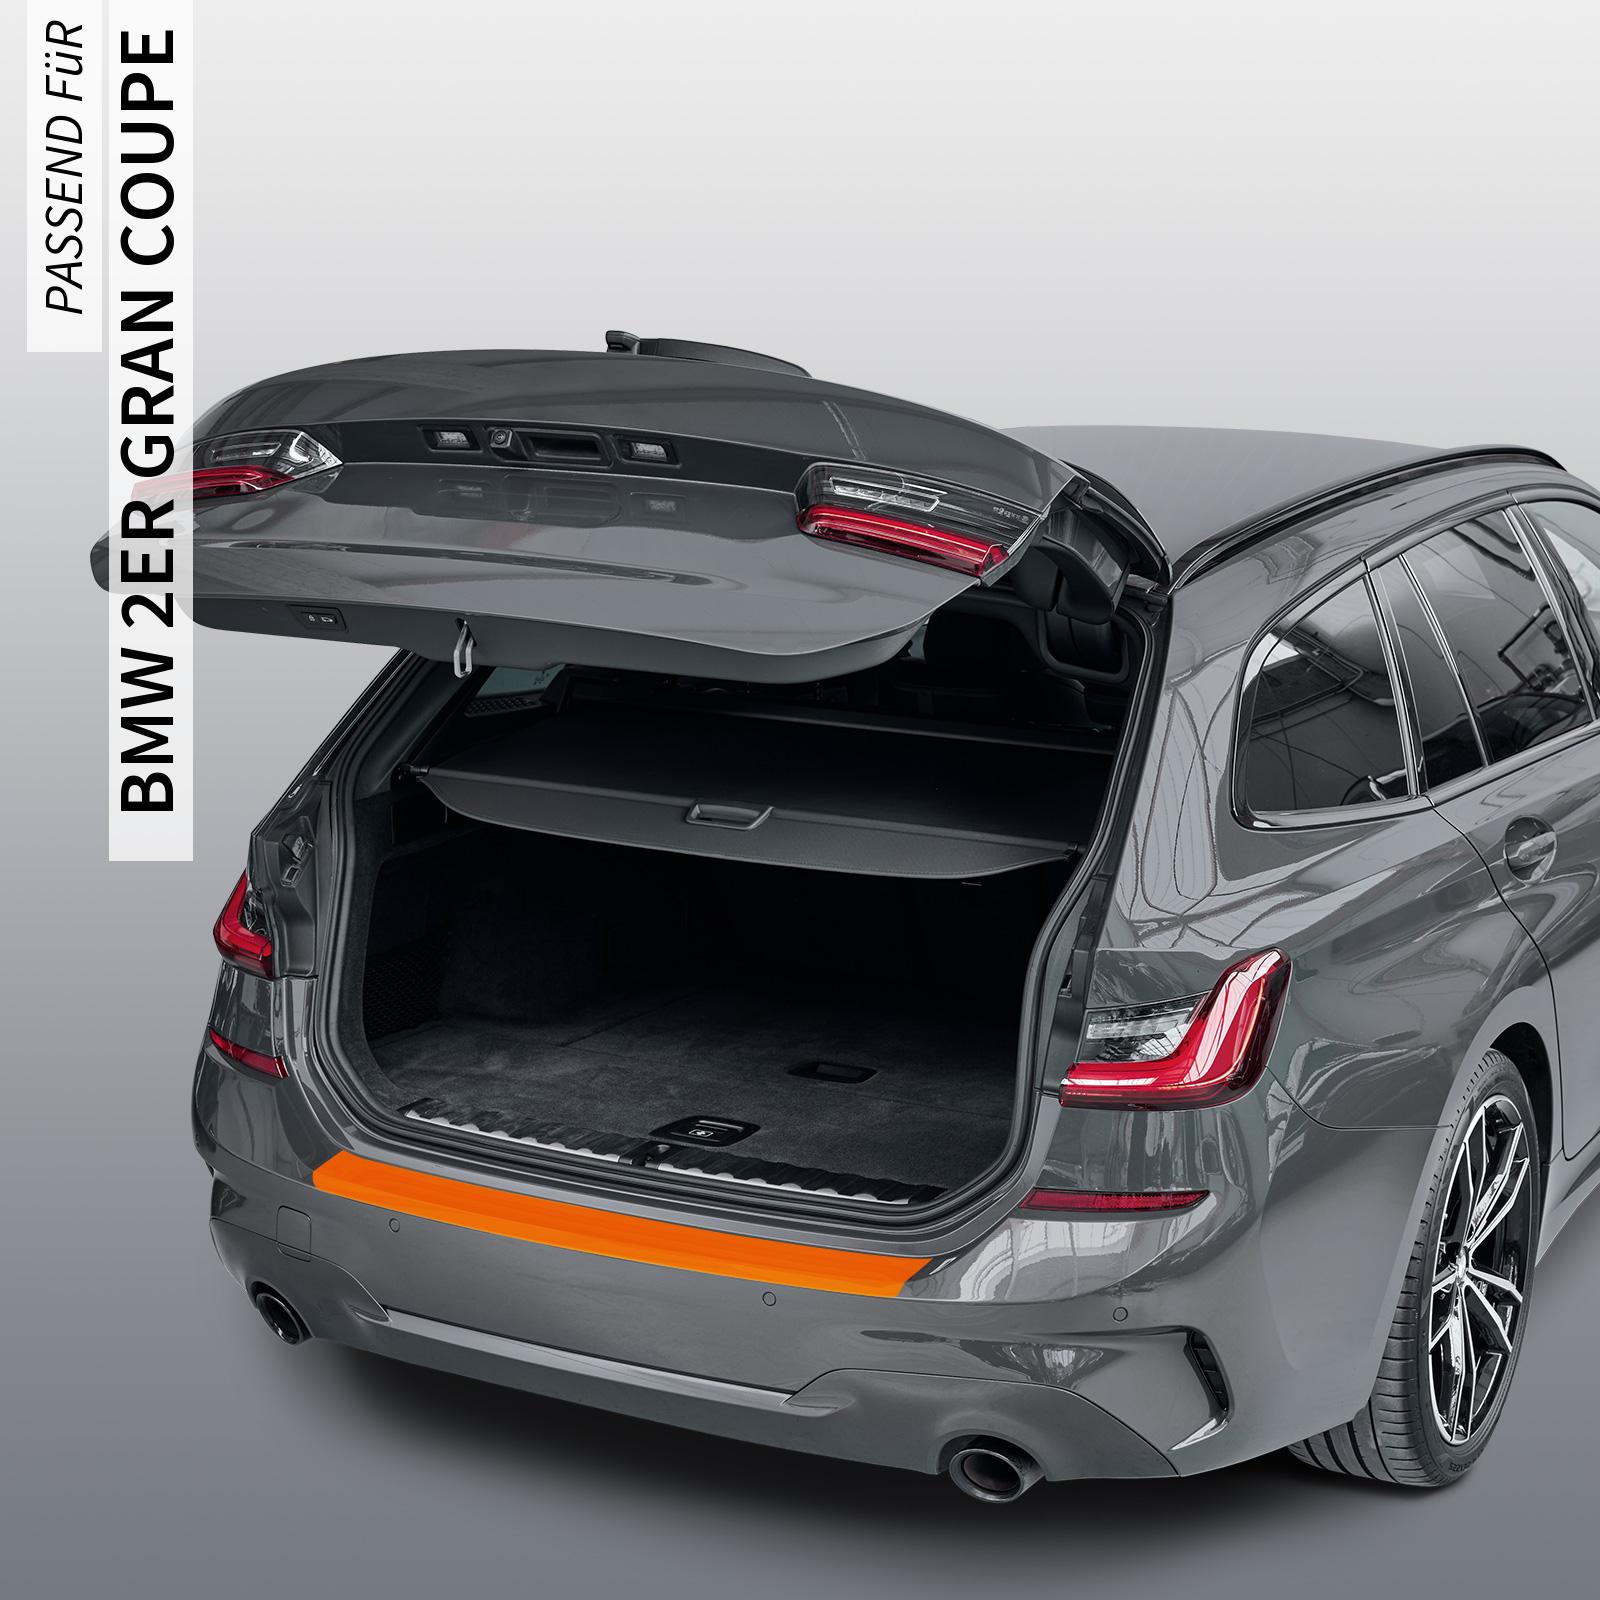 Ladekantenschutzfolie - Transparent Glatt MATT 110 µm stark  für BMW 2er Gran Coupe Typ F44, ab BJ 03/2020